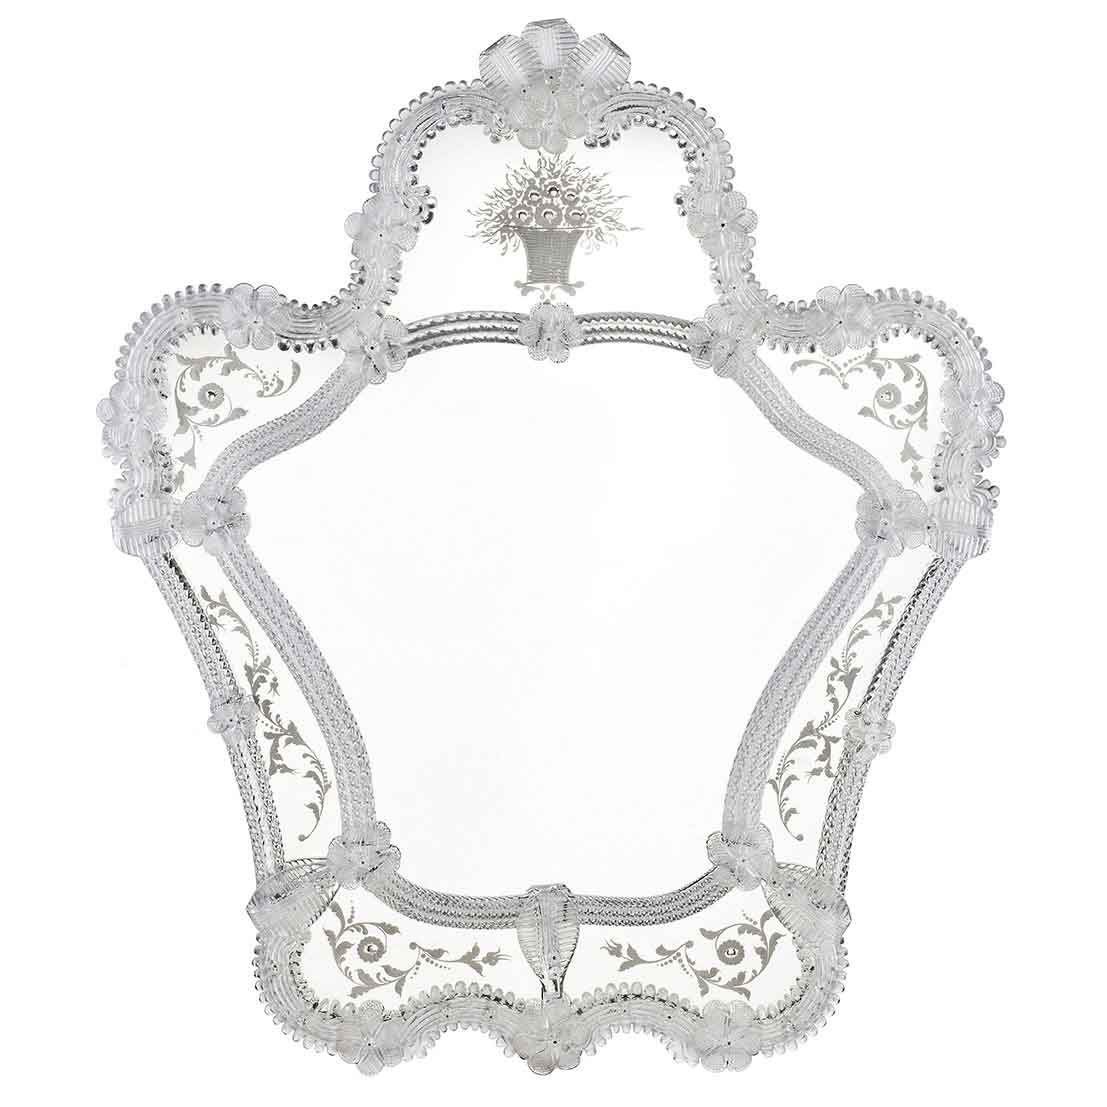 specchio veneziano classico con fasce incise a mano e  ricci, canne, foglie, fiori e fiori doppi in vetro di murano di colore cristallo su fondo argento.